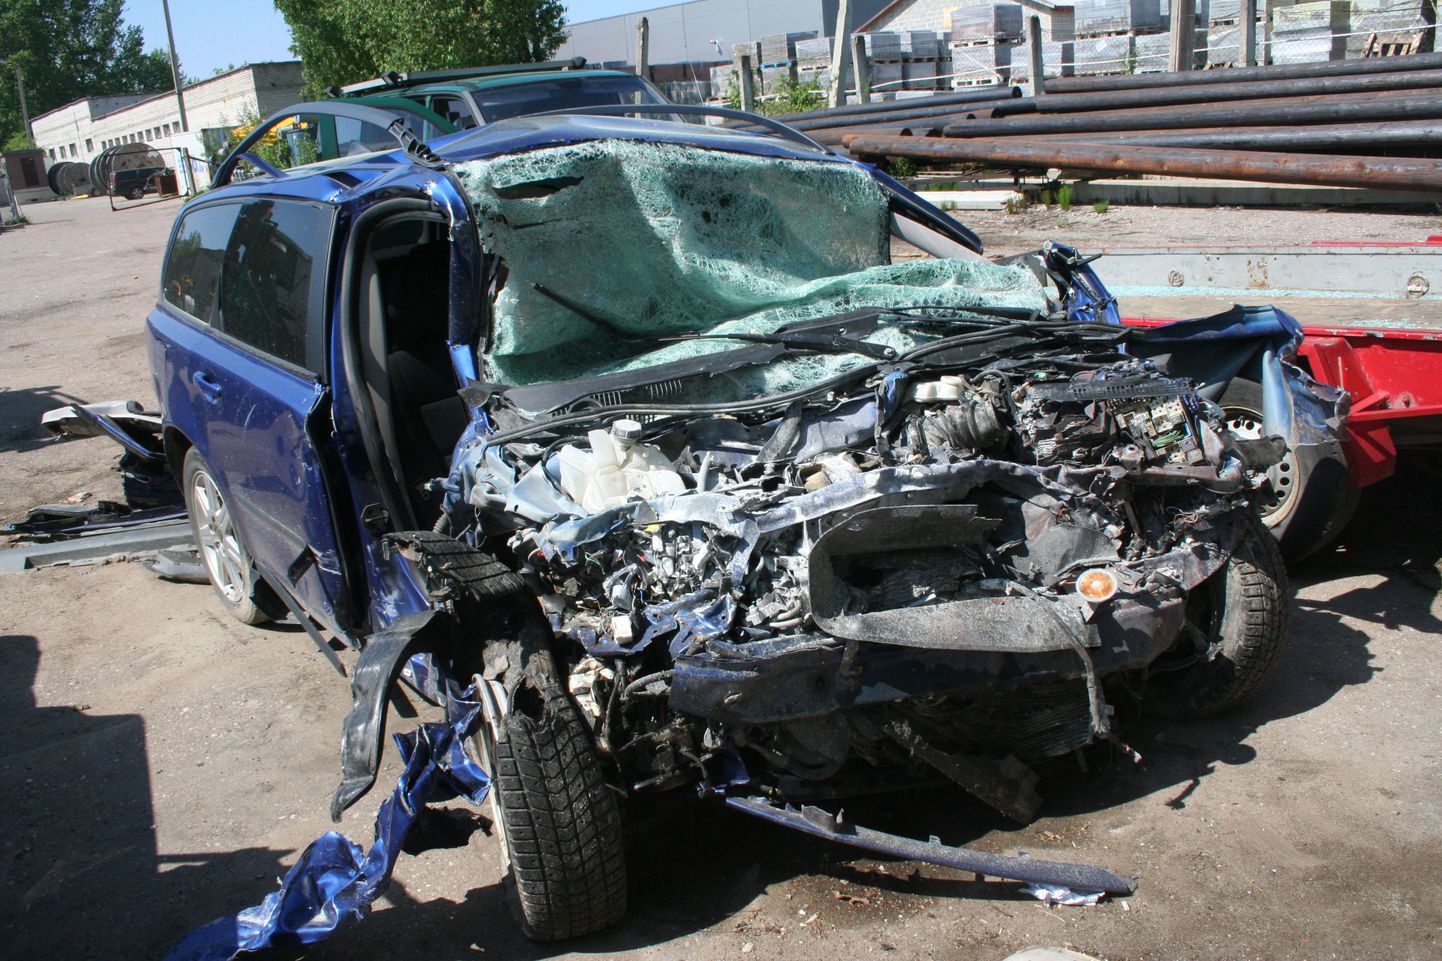 Kui auto on niivõrd kannatada saanud, saavad liikluseksperdid sealt ikka mingisuguse info kätte. Liiklusõnnetus Pärnus.